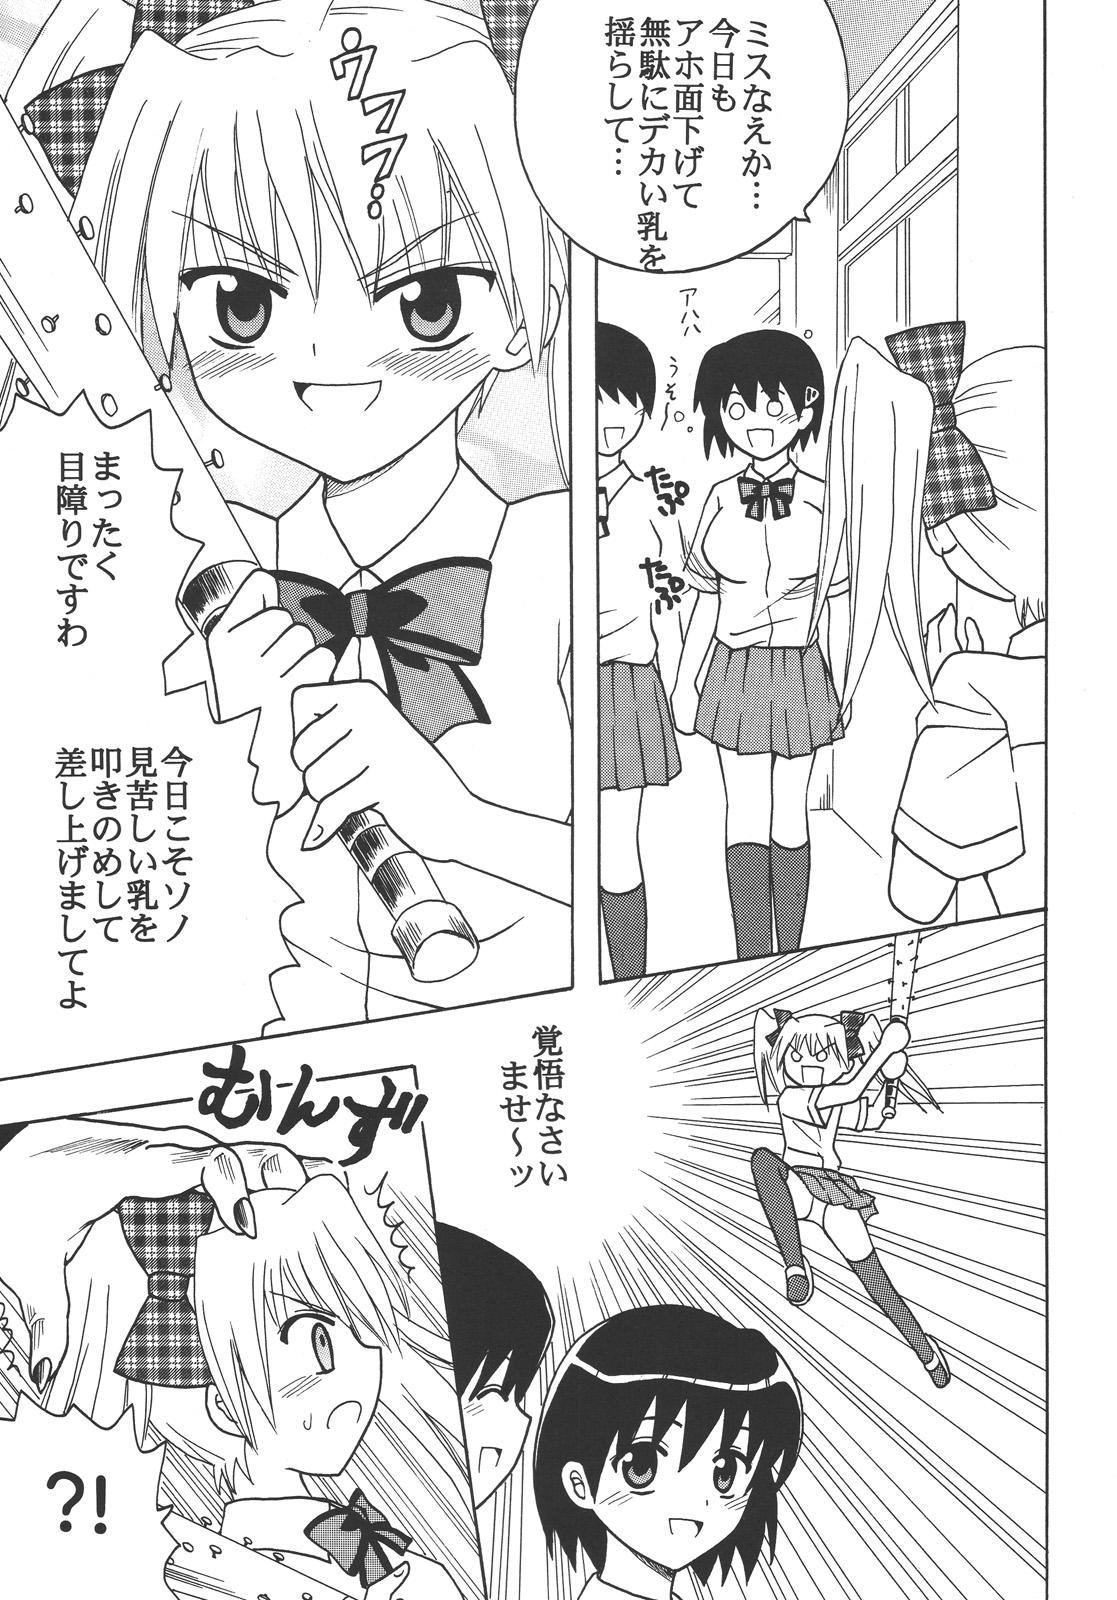 Toy Nakadashi Maid no Hinkaku 3 - Kamen no maid guy Ecuador - Page 4